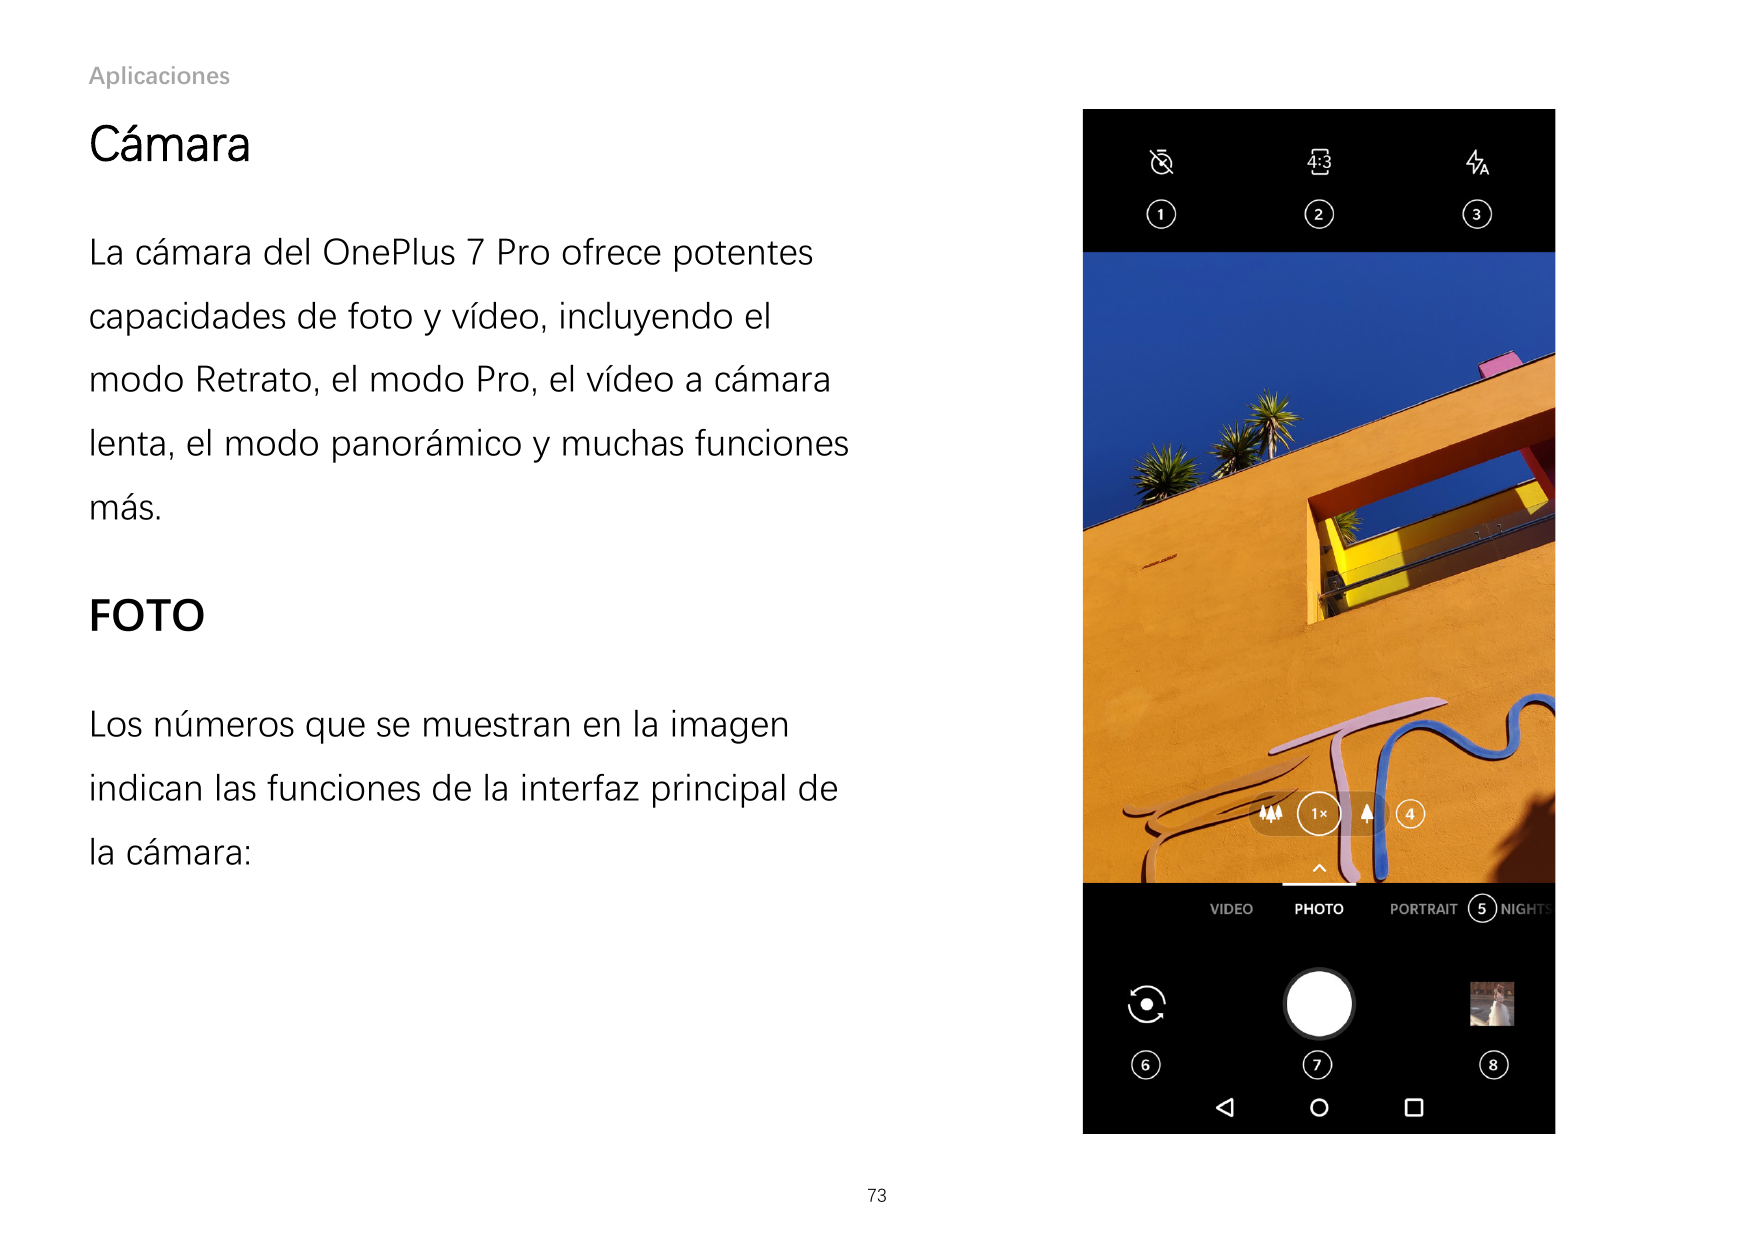 AplicacionesCámaraLa cámara del OnePlus 7 Pro ofrece potentescapacidades de foto y vídeo, incluyendo elmodo Retrato, el modo Pro